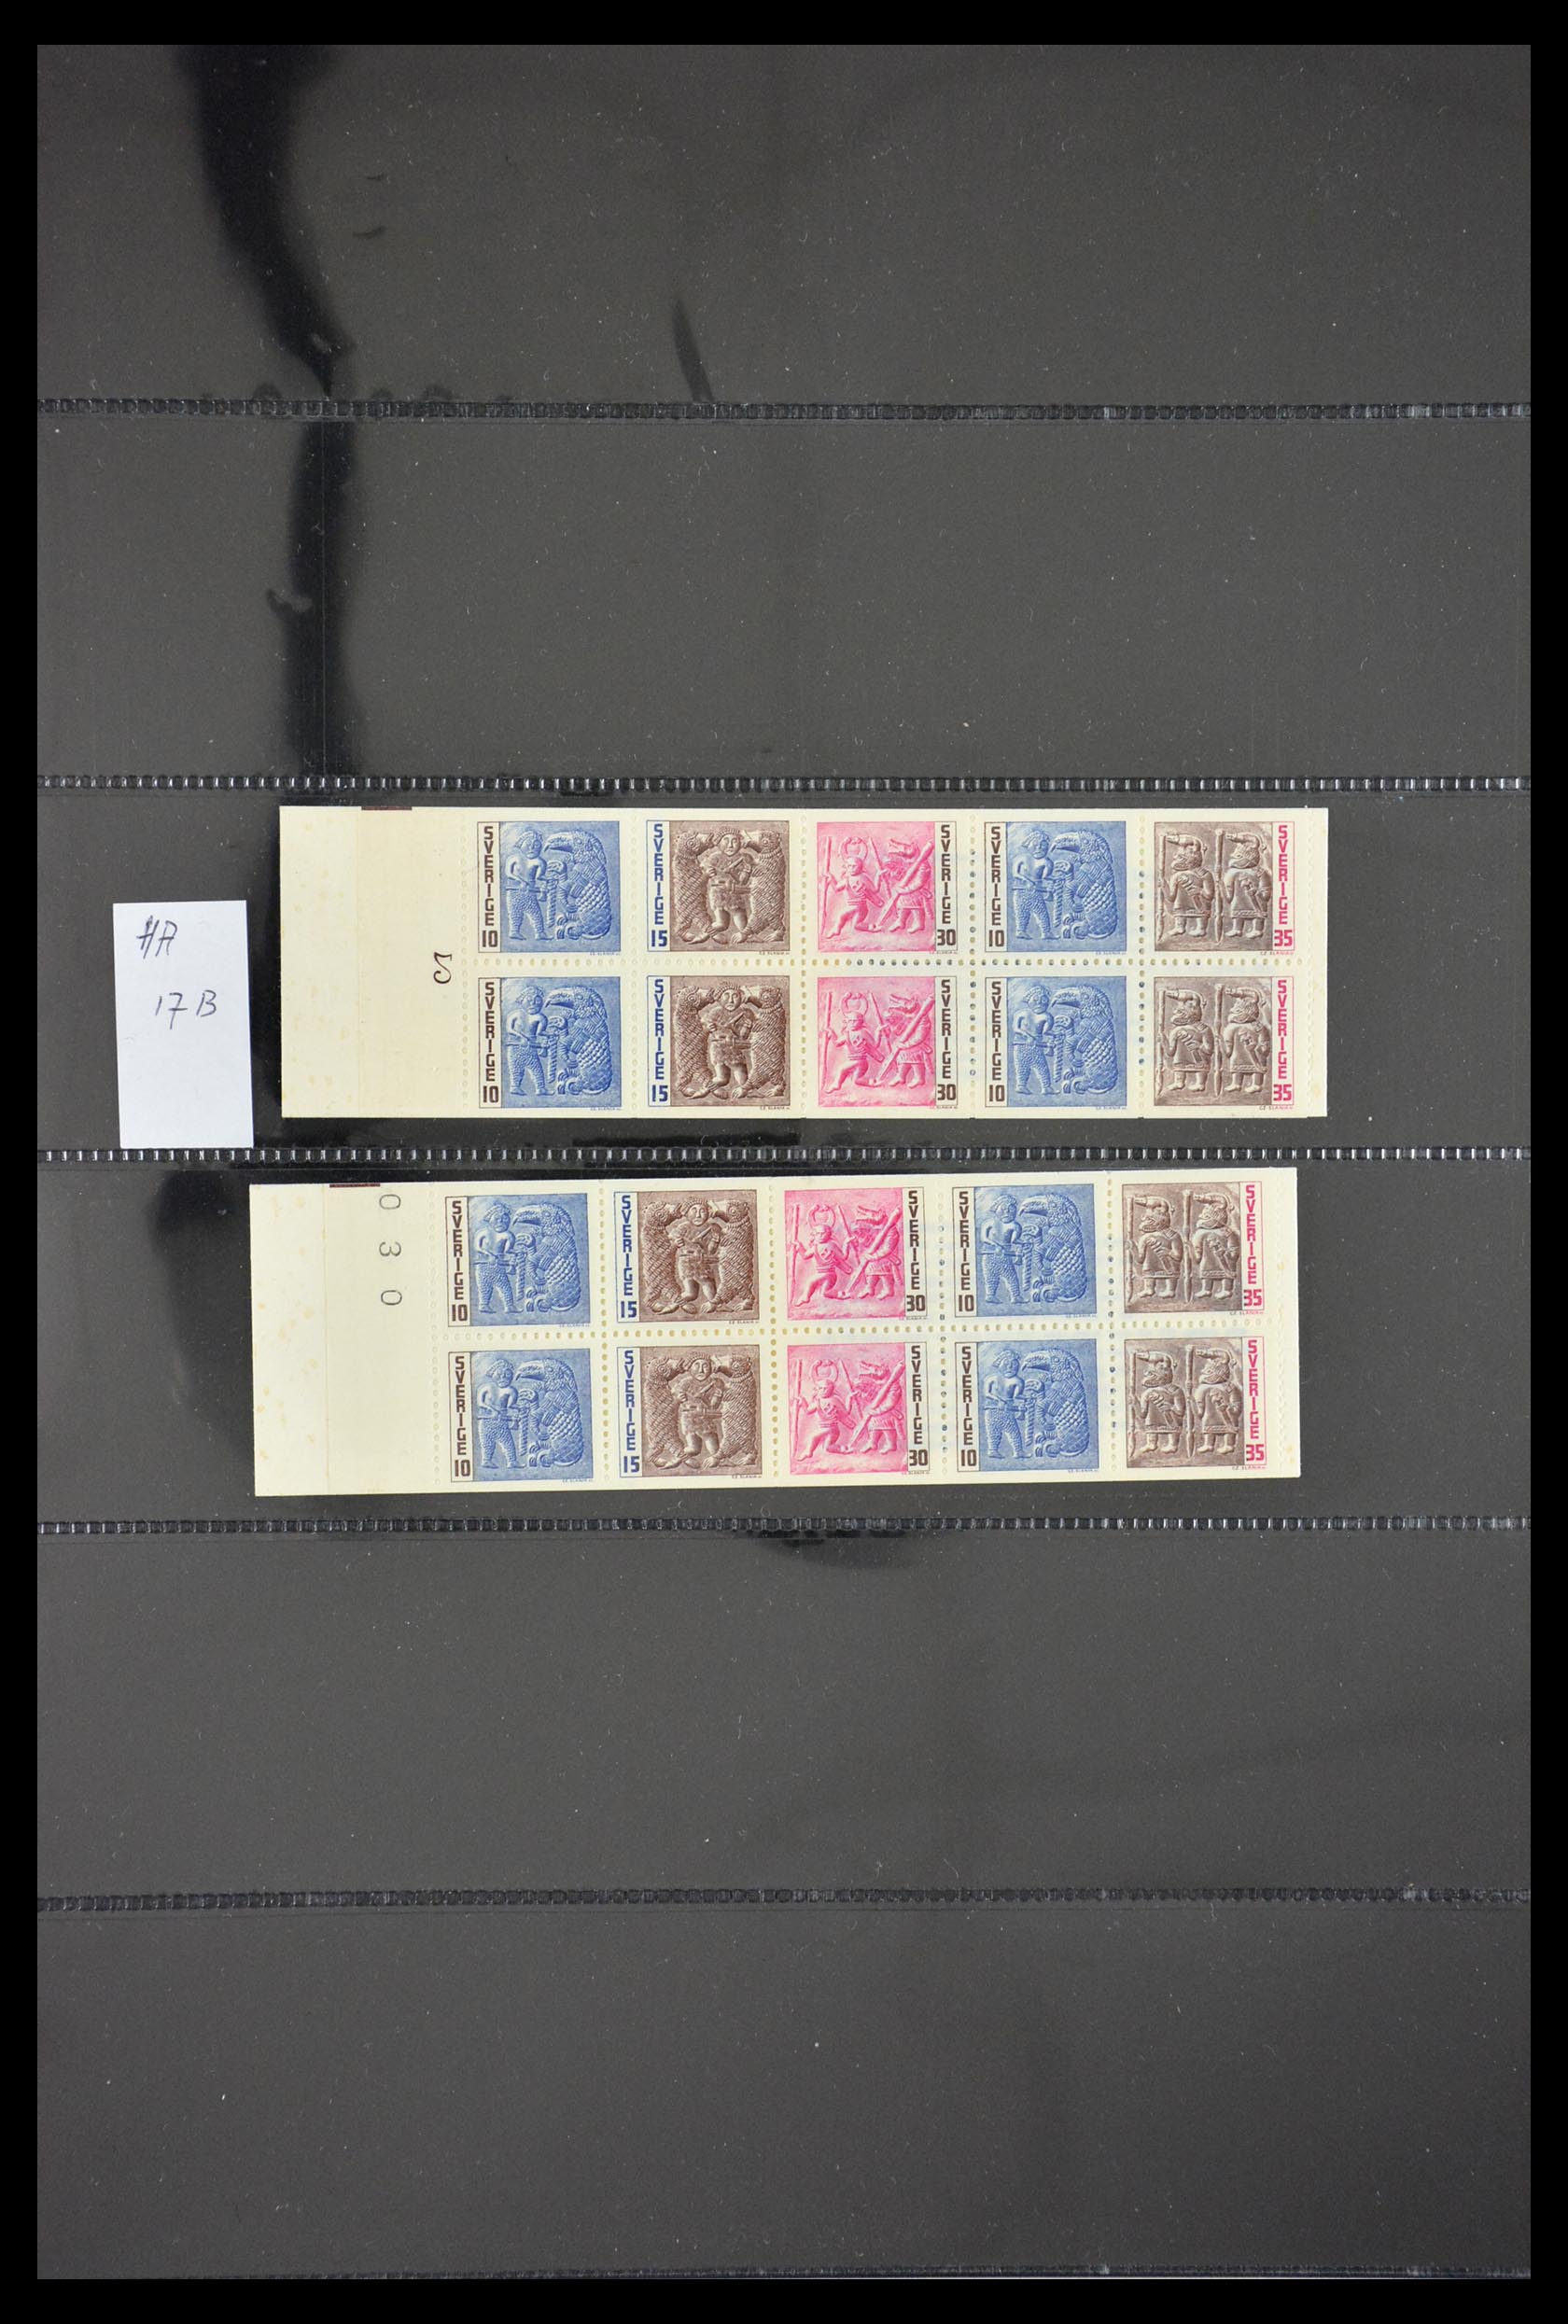 29368 019 - 29368 Sweden stamp booklets 1942-1996.